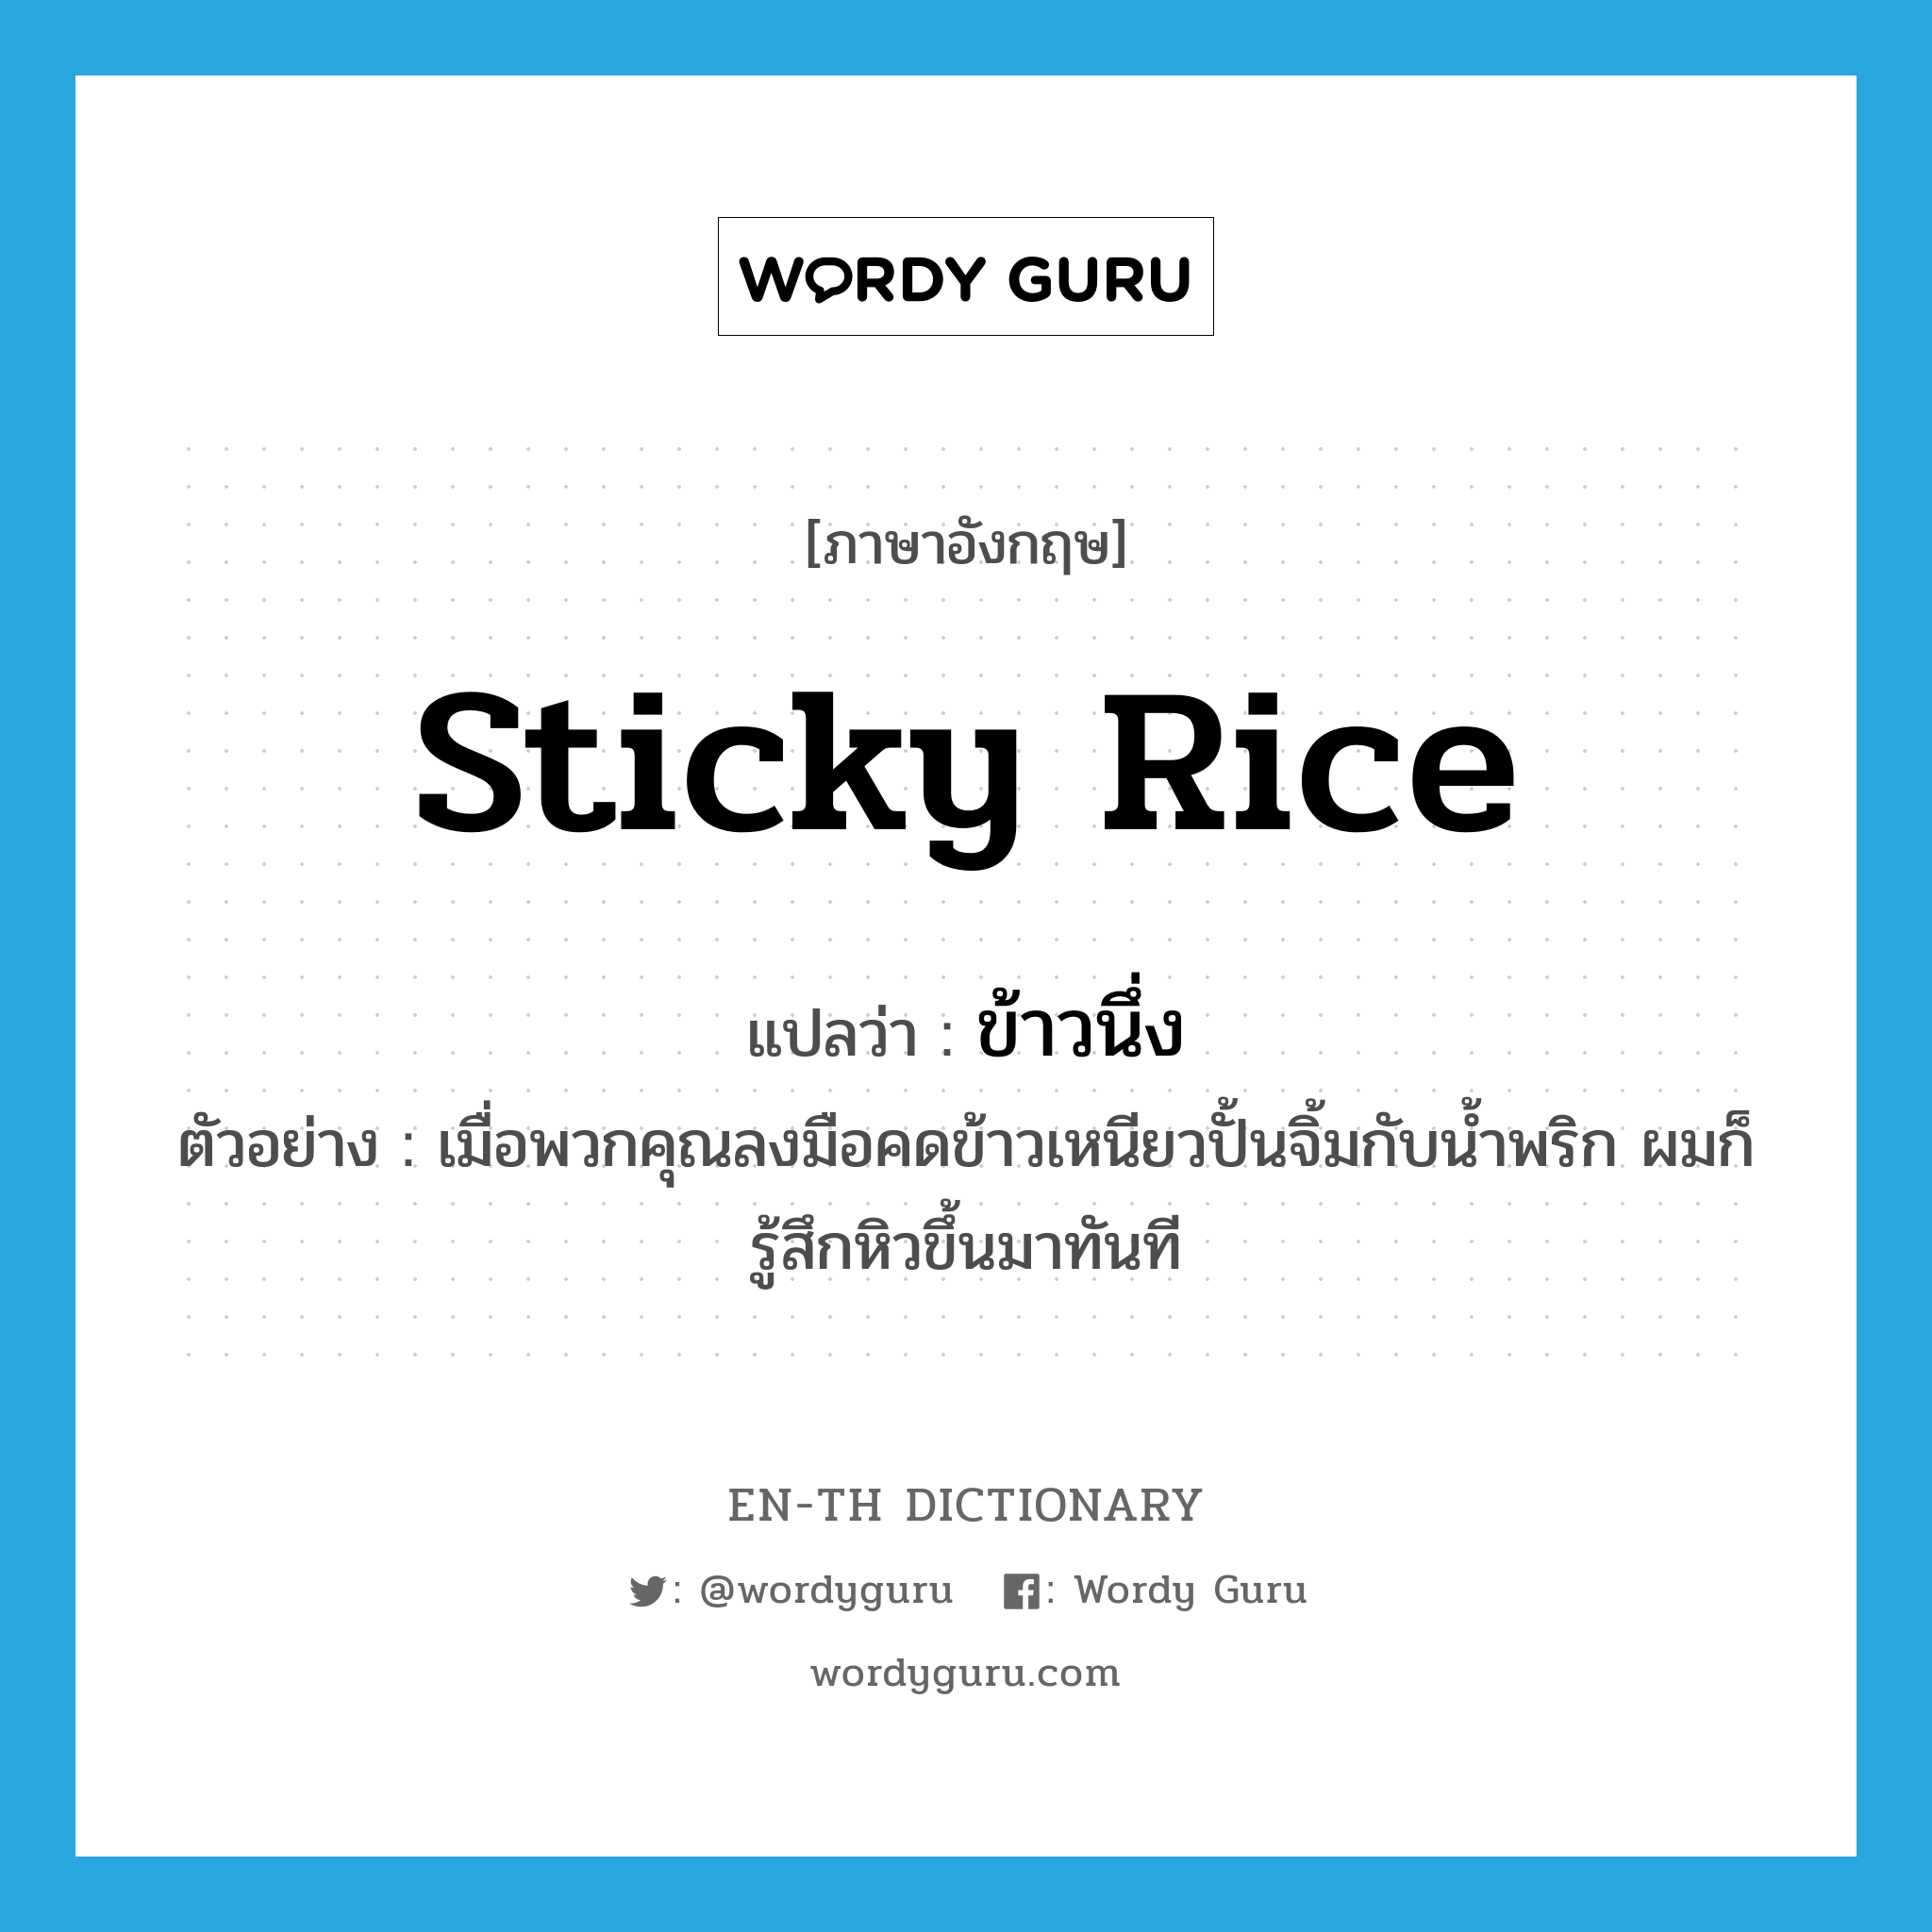 ข้าวนึ่ง ภาษาอังกฤษ?, คำศัพท์ภาษาอังกฤษ ข้าวนึ่ง แปลว่า sticky rice ประเภท N ตัวอย่าง เมื่อพวกคุณลงมือคดข้าวเหนียวปั้นจิ้มกับน้ำพริก ผมก็รู้สึกหิวขึ้นมาทันที หมวด N